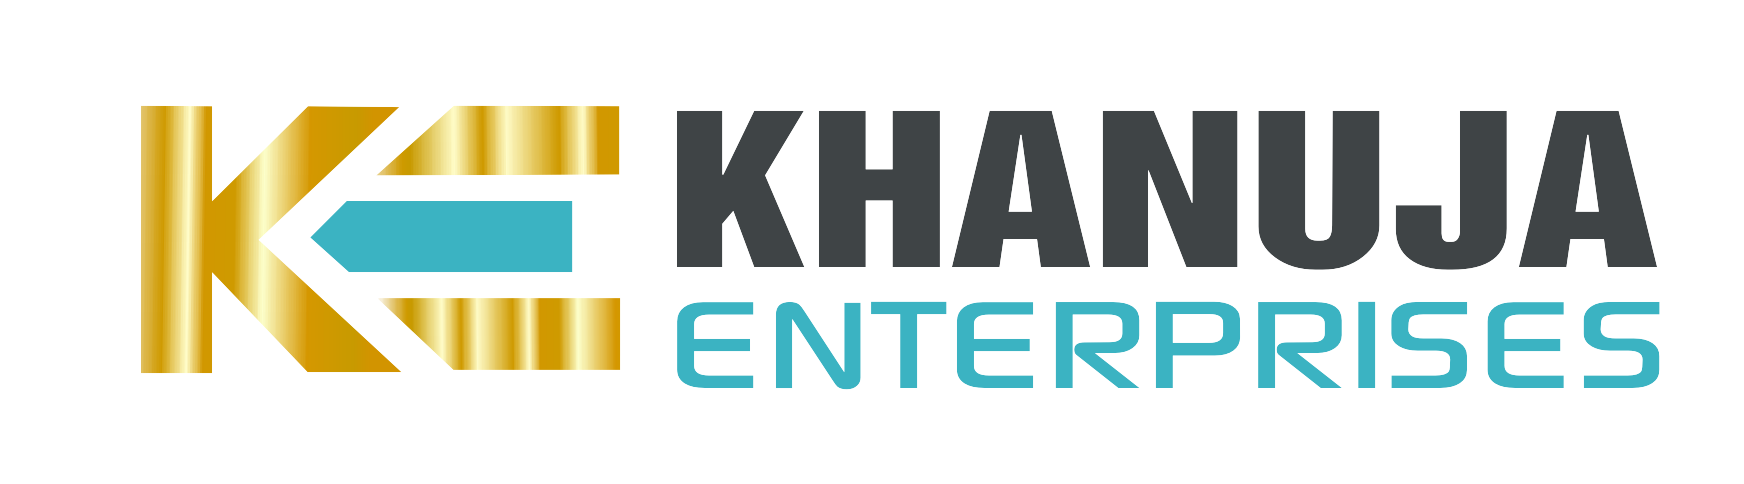 khanuja Enterprises